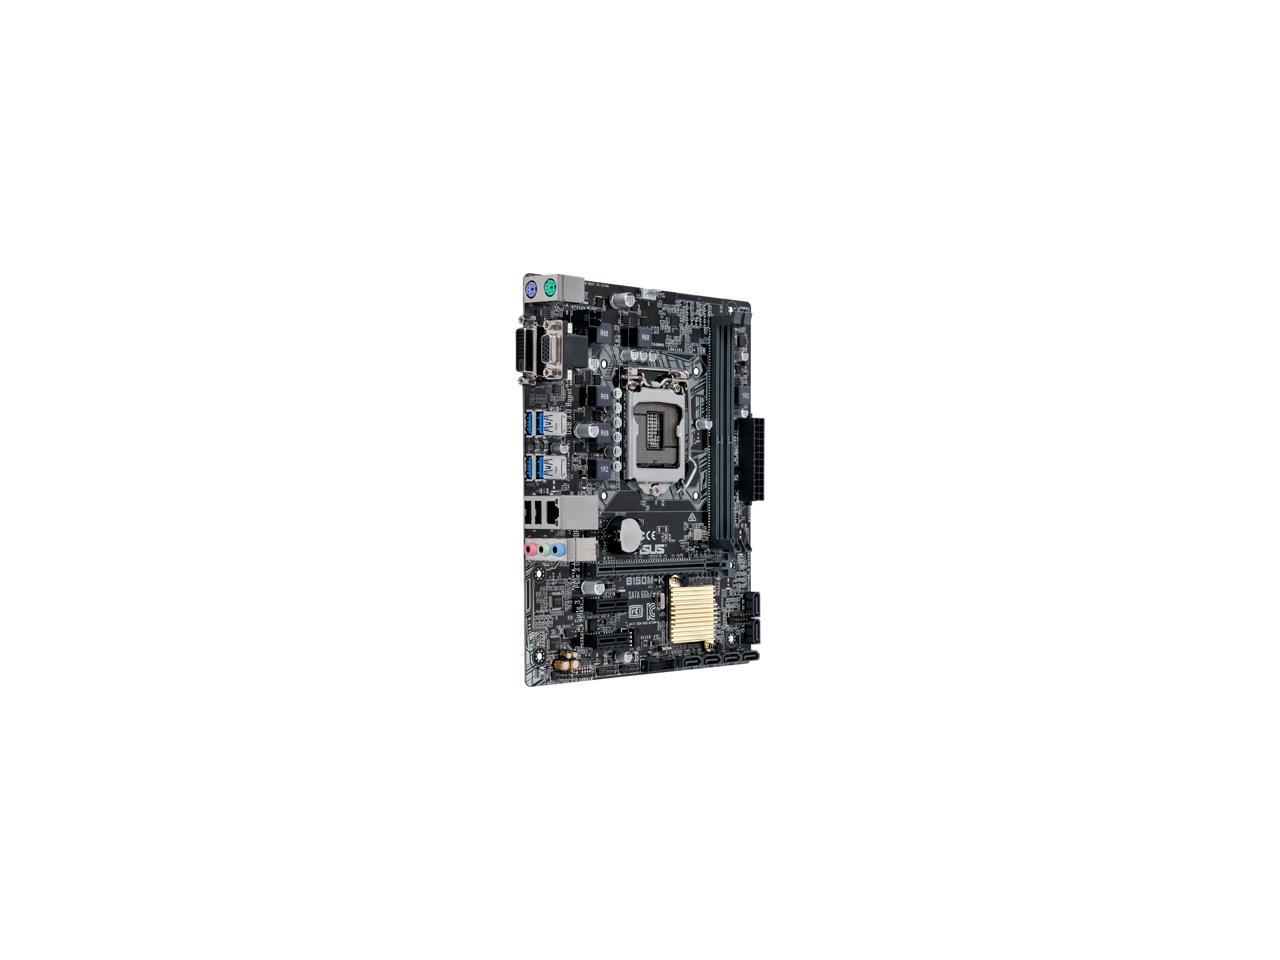 ASUS B150M-K LGA 1151 Intel B150 HDMI SATA 6Gb/s USB 3.0 Micro ATX Intel Motherboard